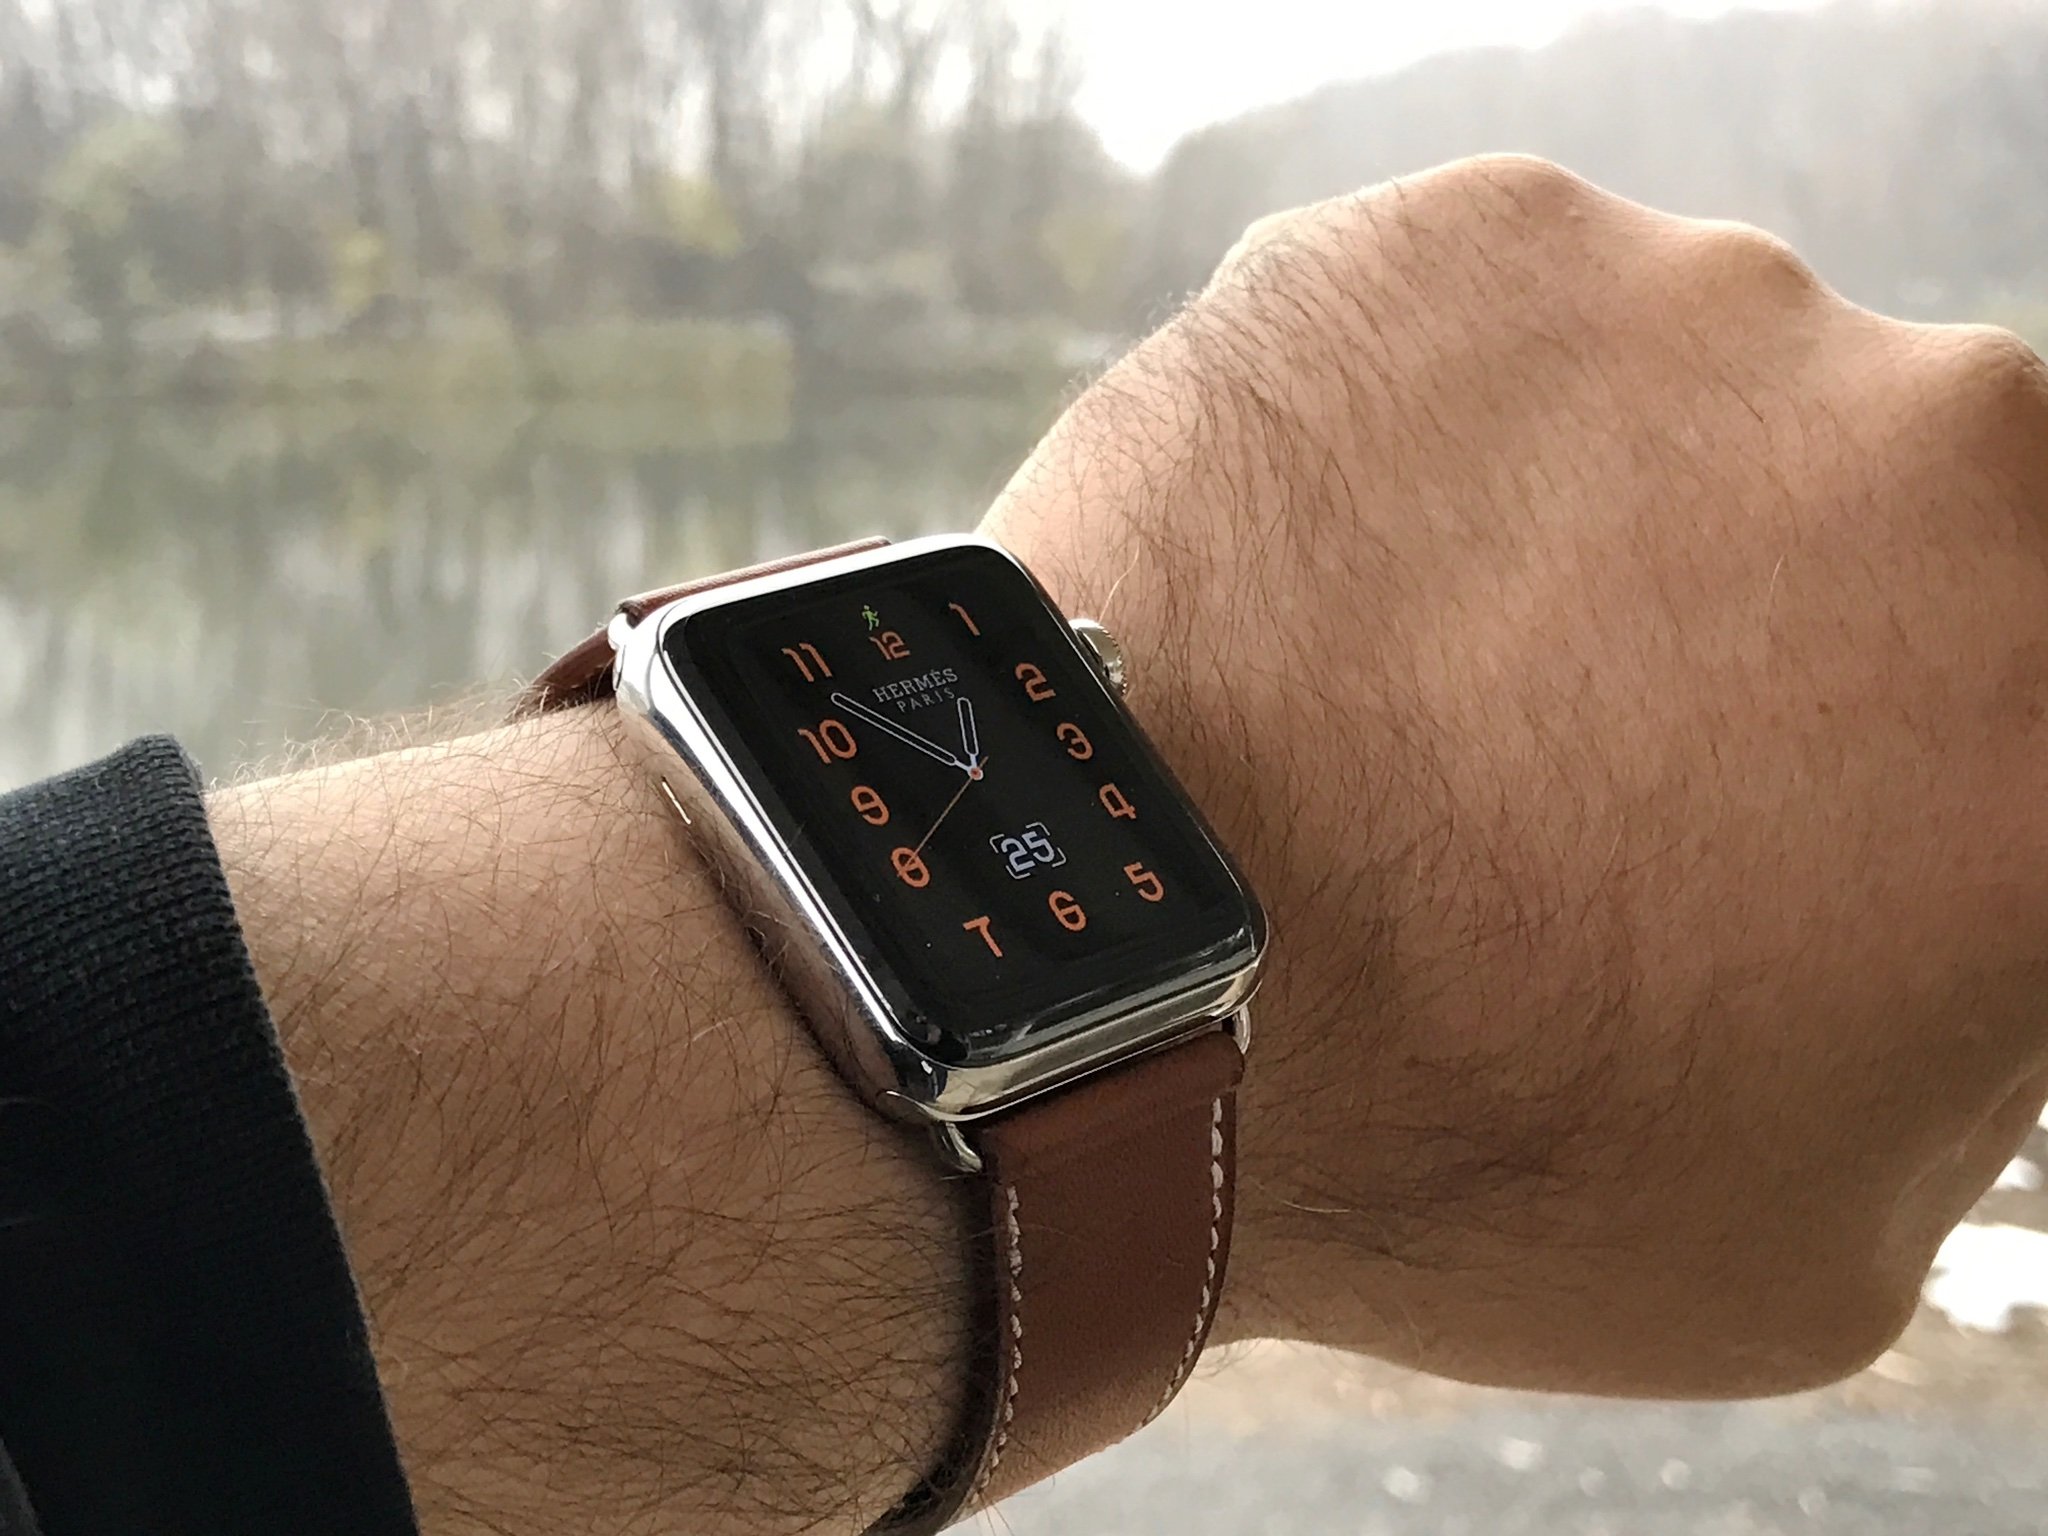 激安オンラインストア Apple Watch Hermès Series2 38mm 腕時計(デジタル)